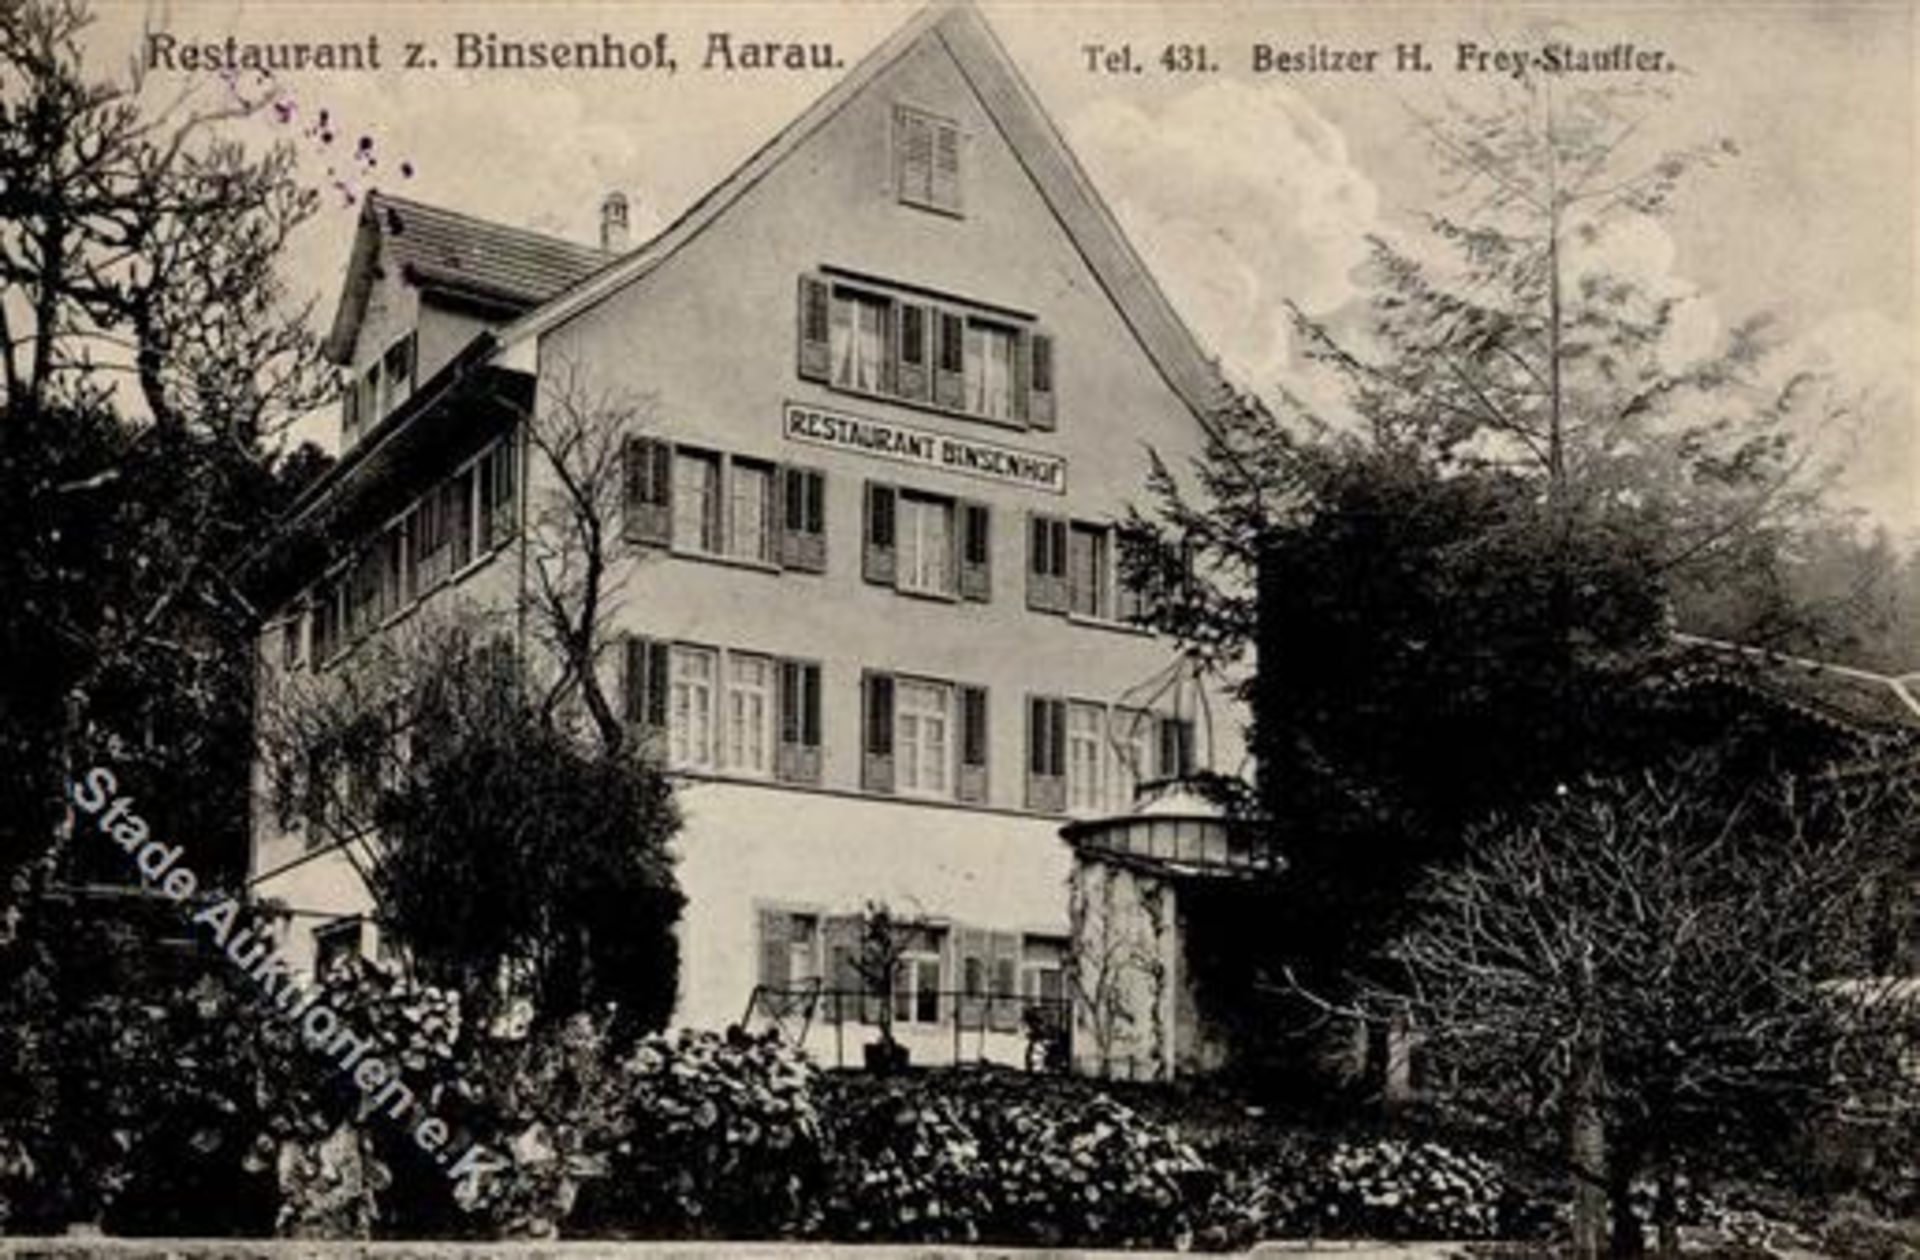 Aarau (5000) Schweiz Gasthaus zum Binsenhof IDieses Los wird in einer online-Auktion ohne Publikum